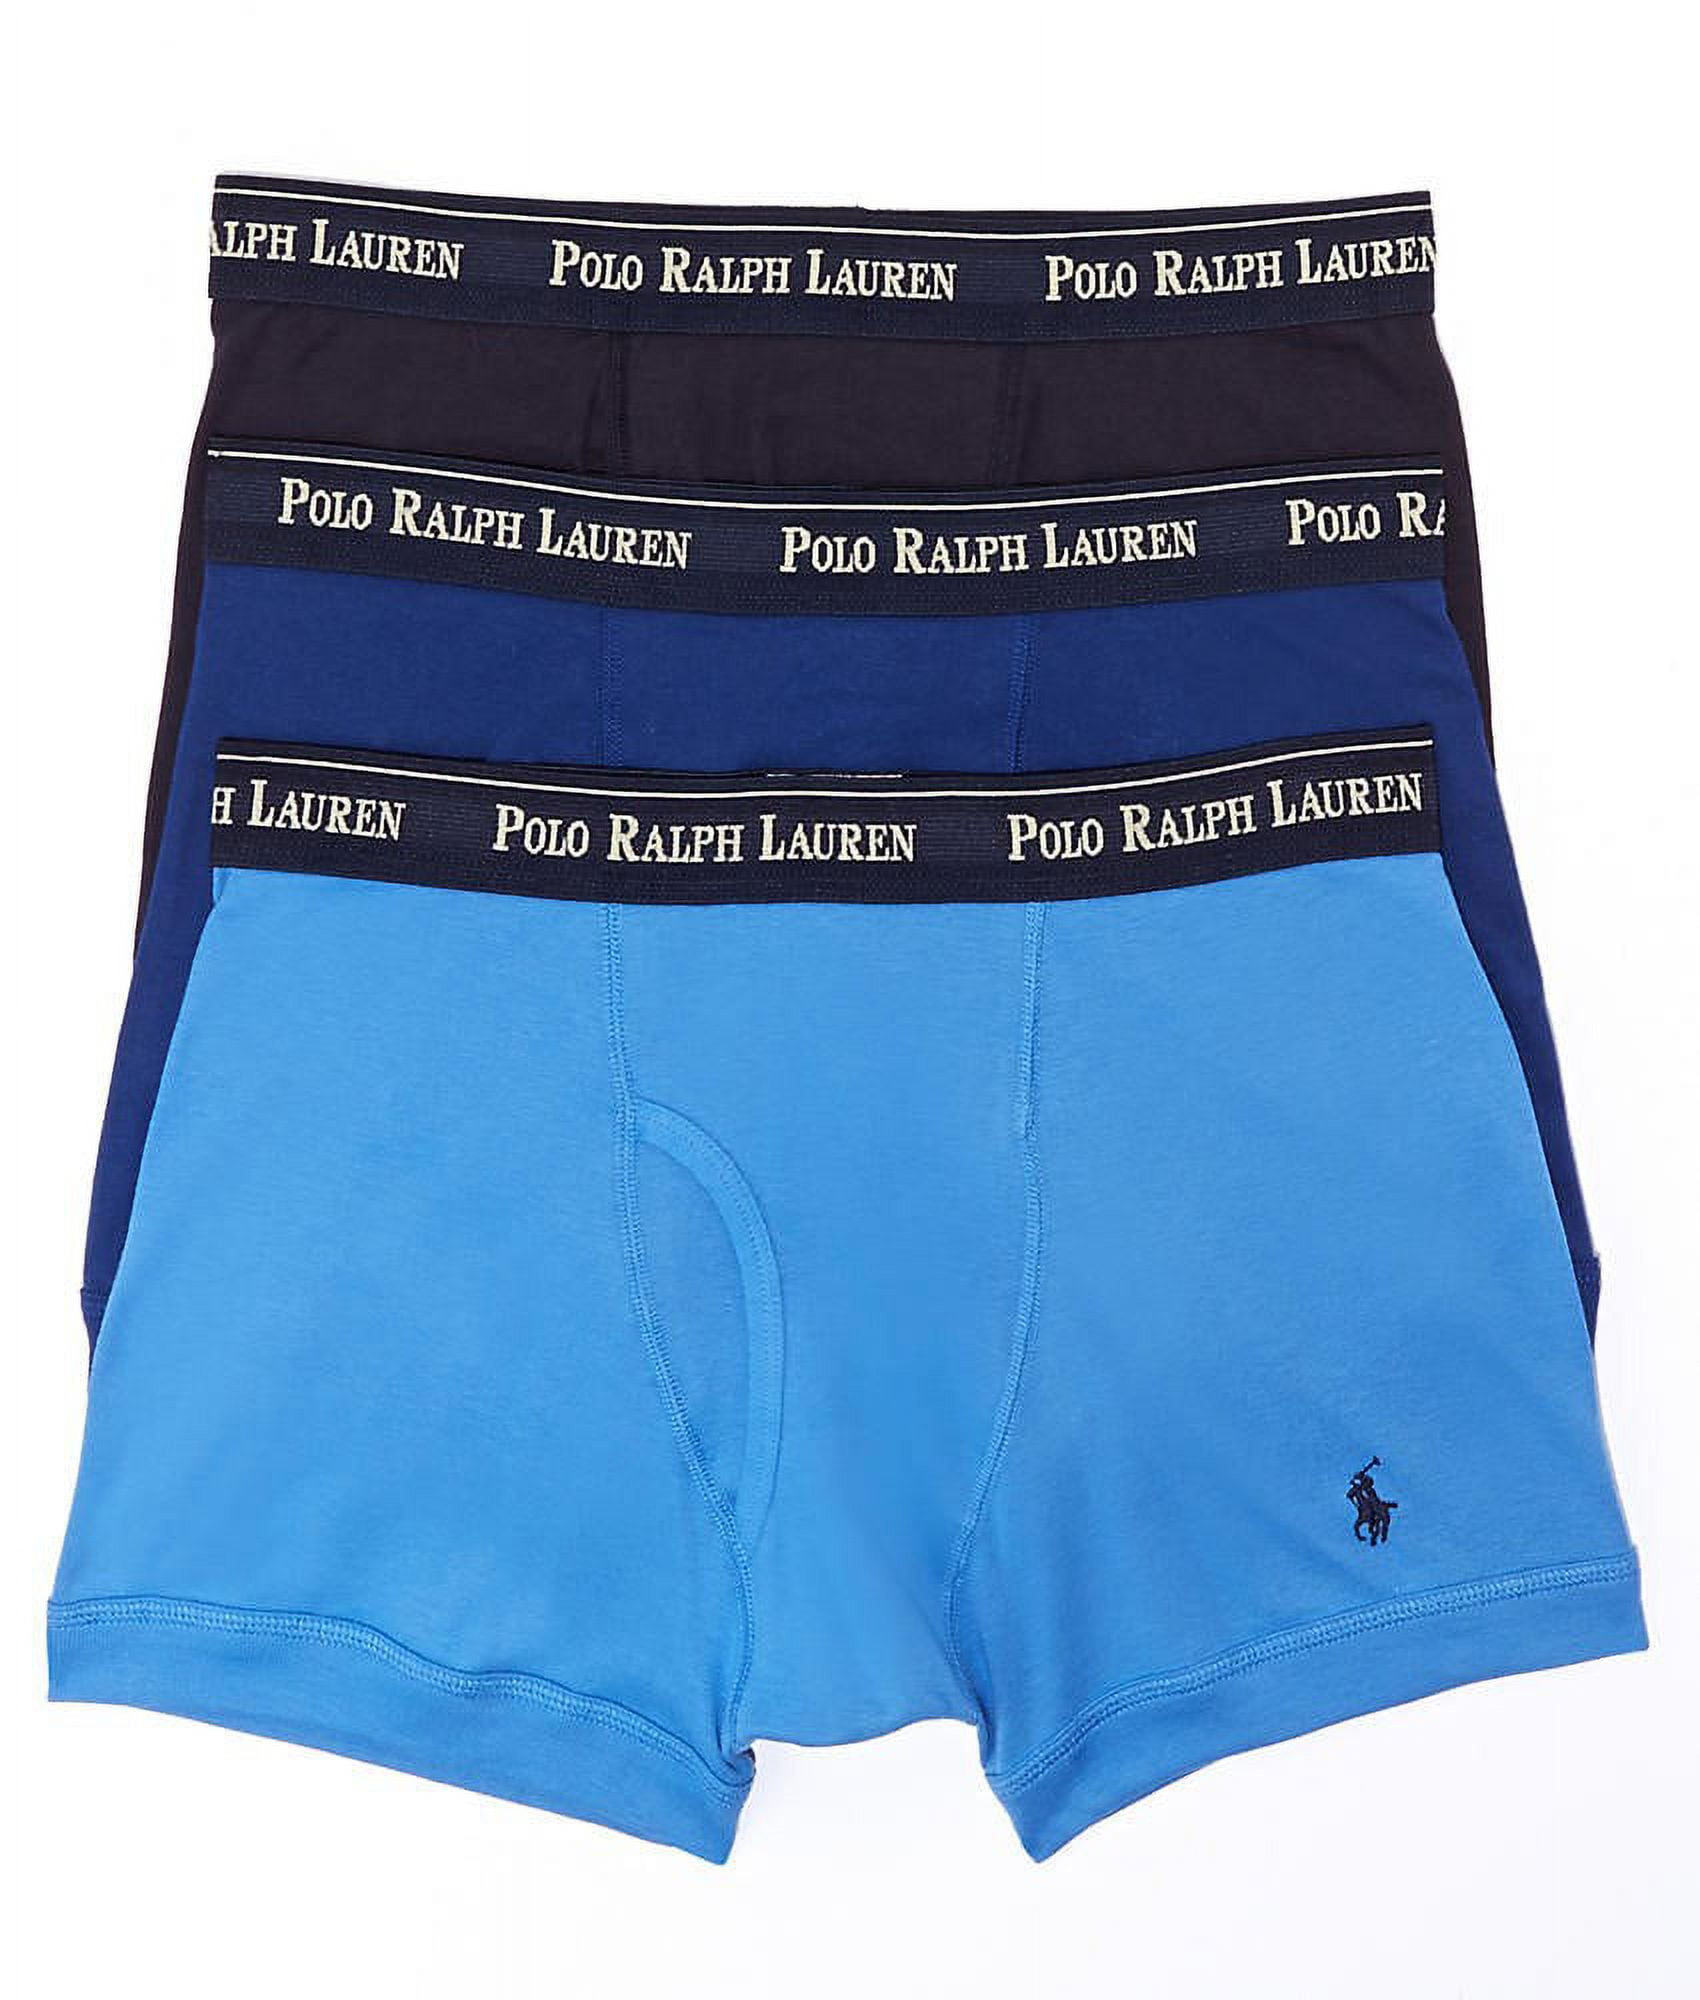 Polo Ralph Lauren Woven Boxers 3-Pack Classic Fit, Size S 100%Cotton Blues